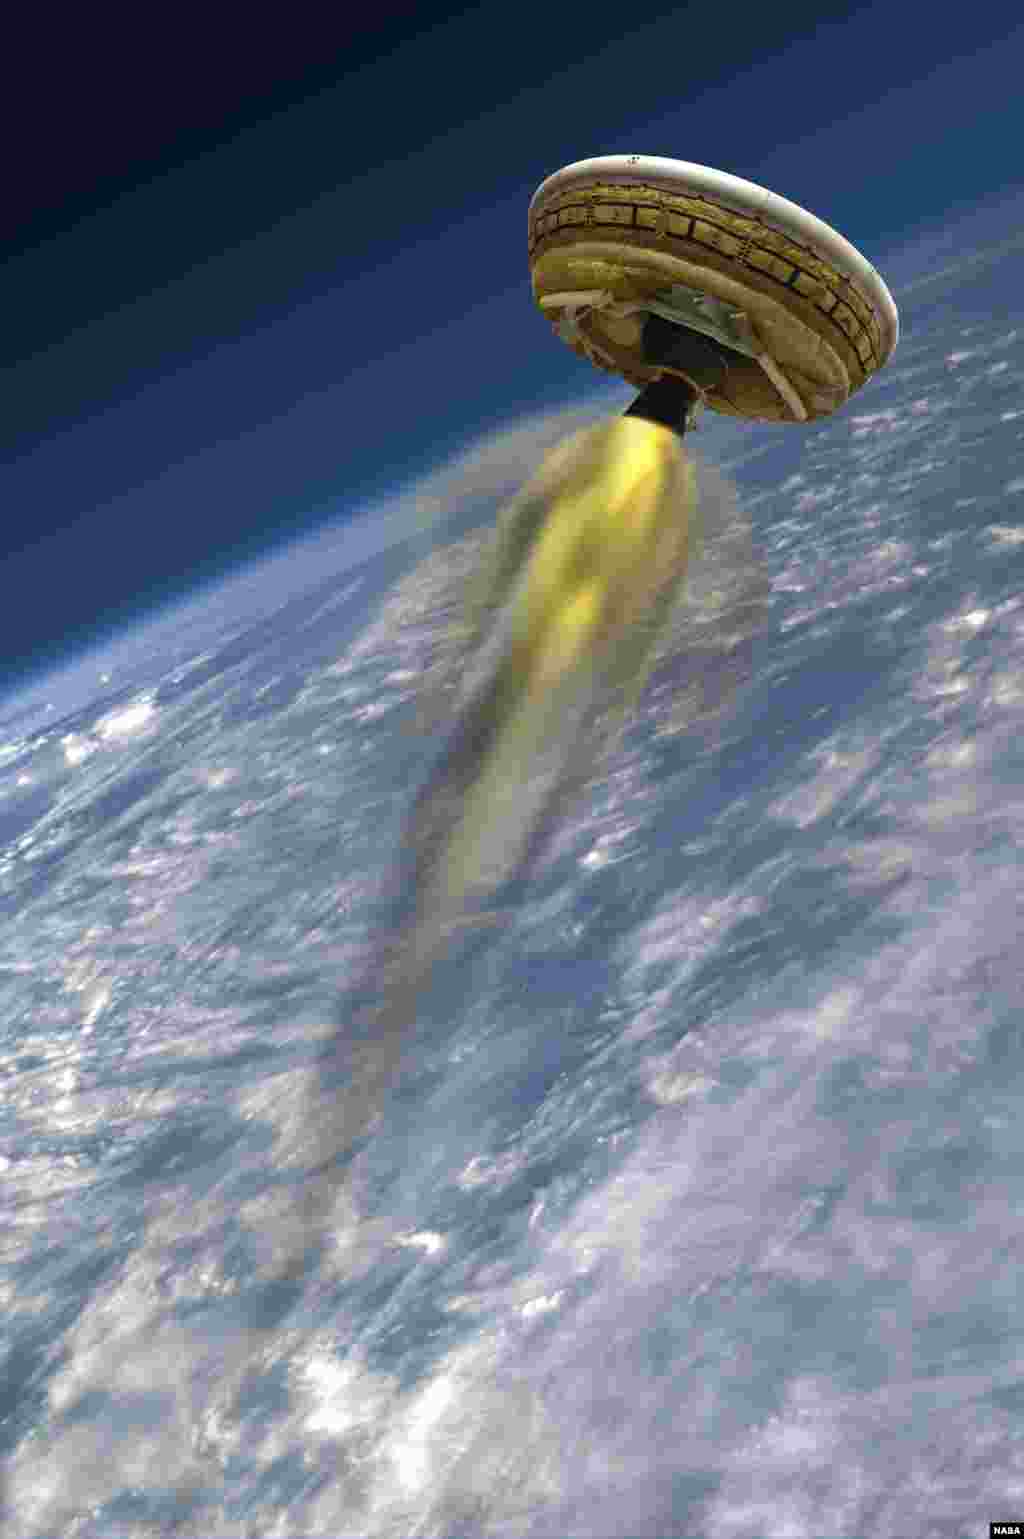 미 항공우주국, NASA가 미래 화성 탐사용으로 개발 중인 우주선 LDSD(Low-Density Supersonic Decelerator)의 상상도. 화성 착륙용으로 개발됐다. 로켓 추진 방식으로 비행한 뒤 화성 대기 주변에서 풍선처럼 동체를 부풀린 뒤 감속해서 착륙하는 방식이다.